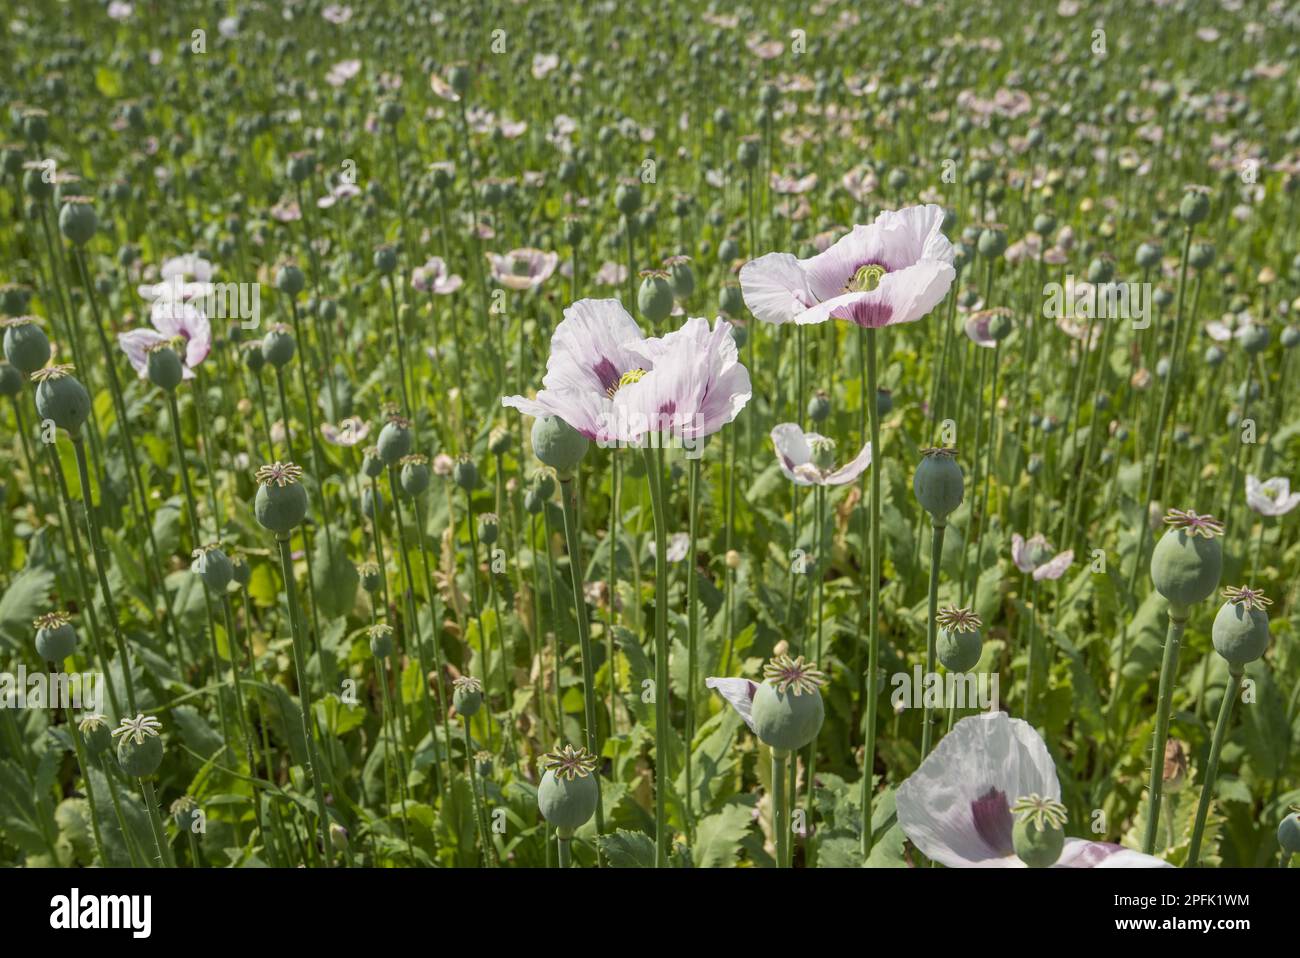 Culture du pavot à opium (Papaver somniferum), des fleurs et des graines dans le champ, Lincolnshire, Angleterre, Royaume-Uni Banque D'Images